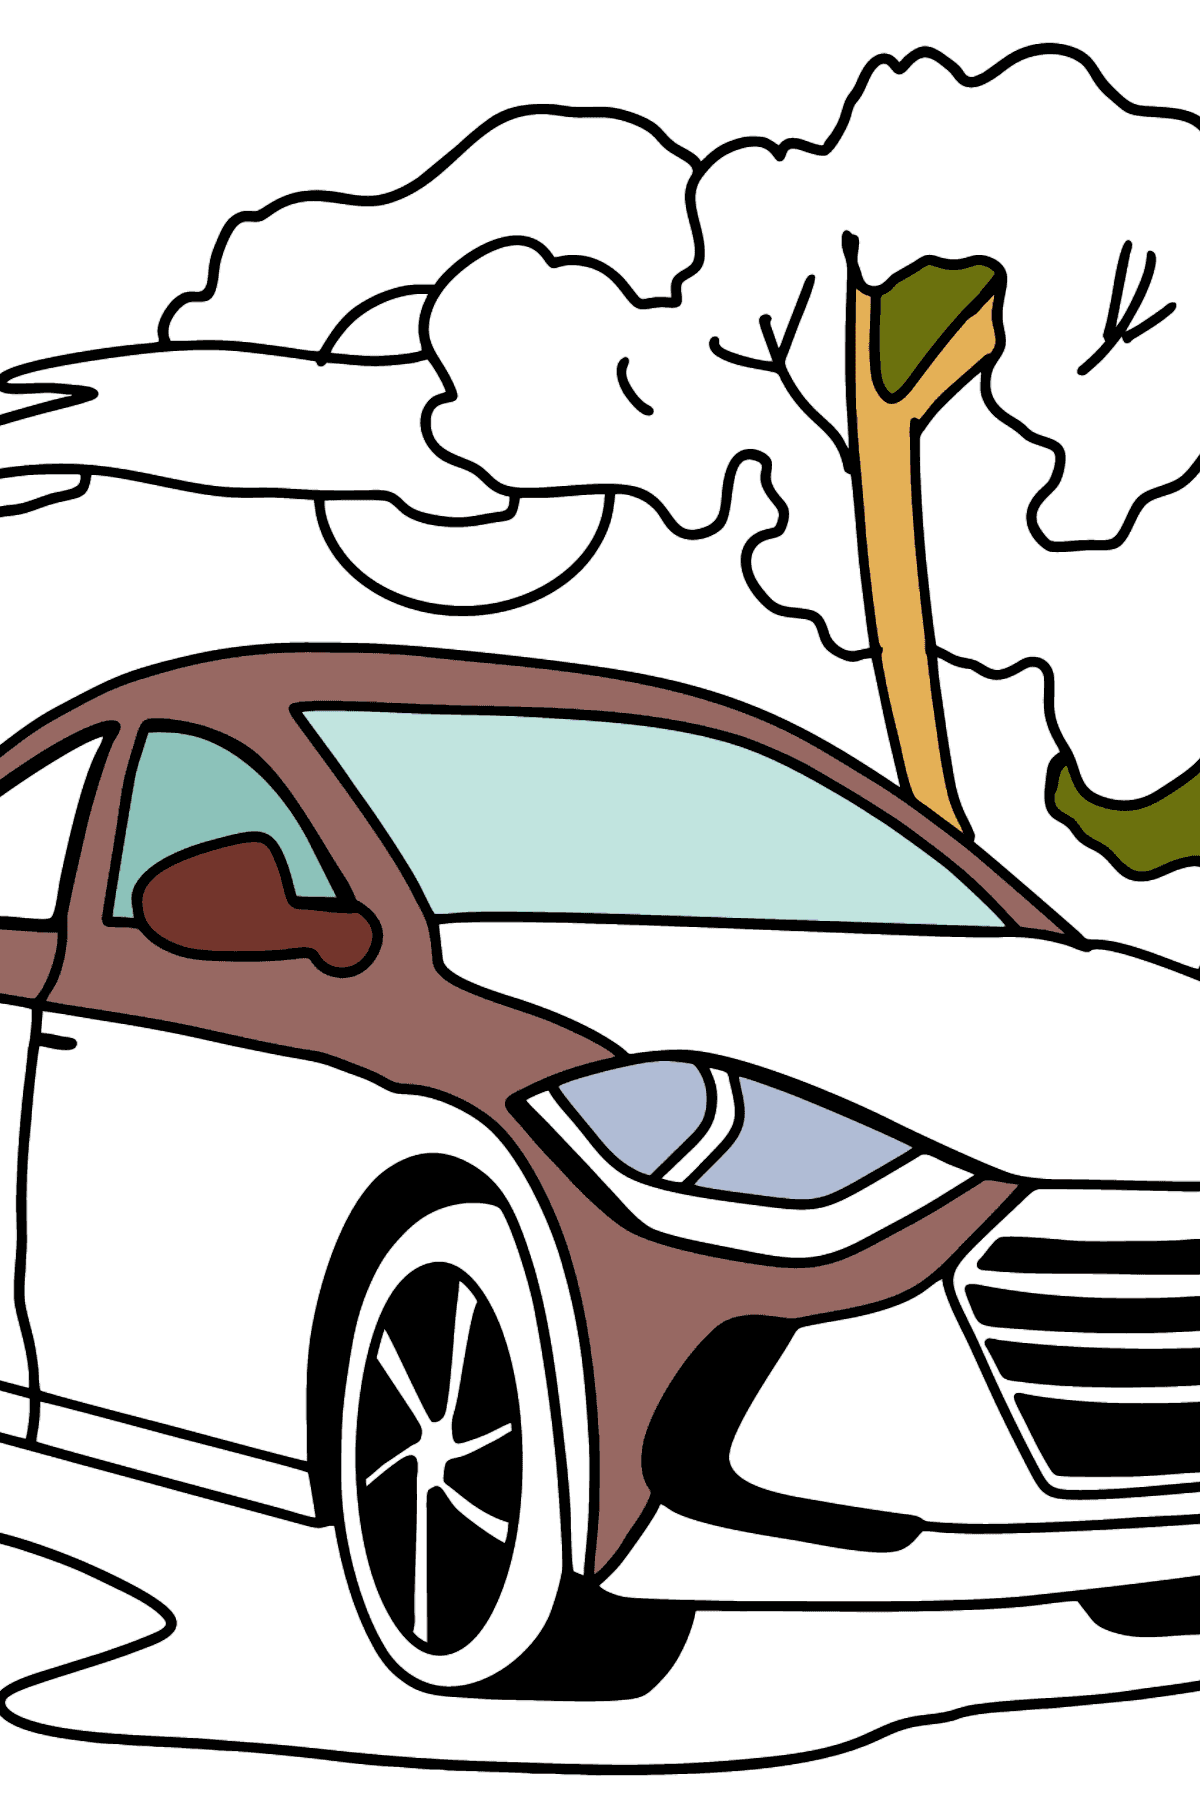 Desenhos para colorir do carro Hyundai - Imagens para Colorir para Crianças